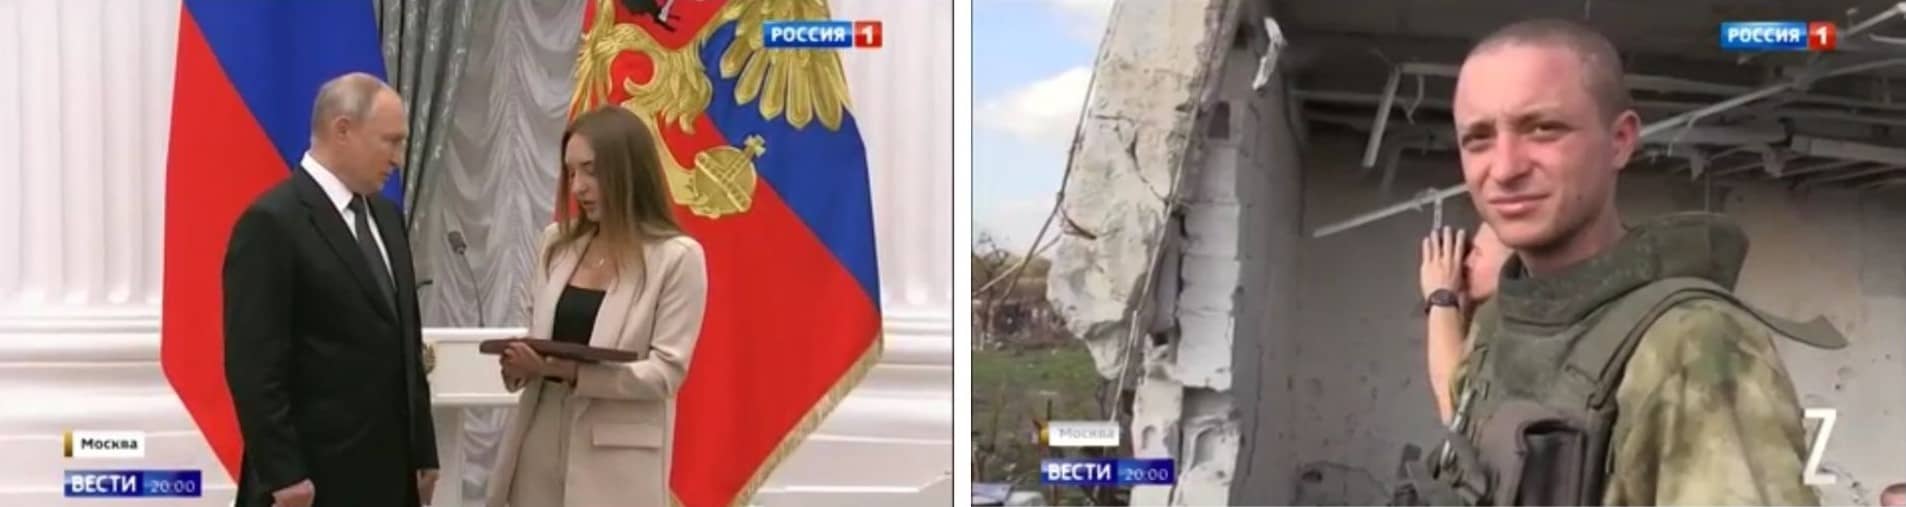 Dwa zdjęcia: młoda kobieta odbiera dyplom od Putina i młody mężczyżczyzna w mundurze polowym